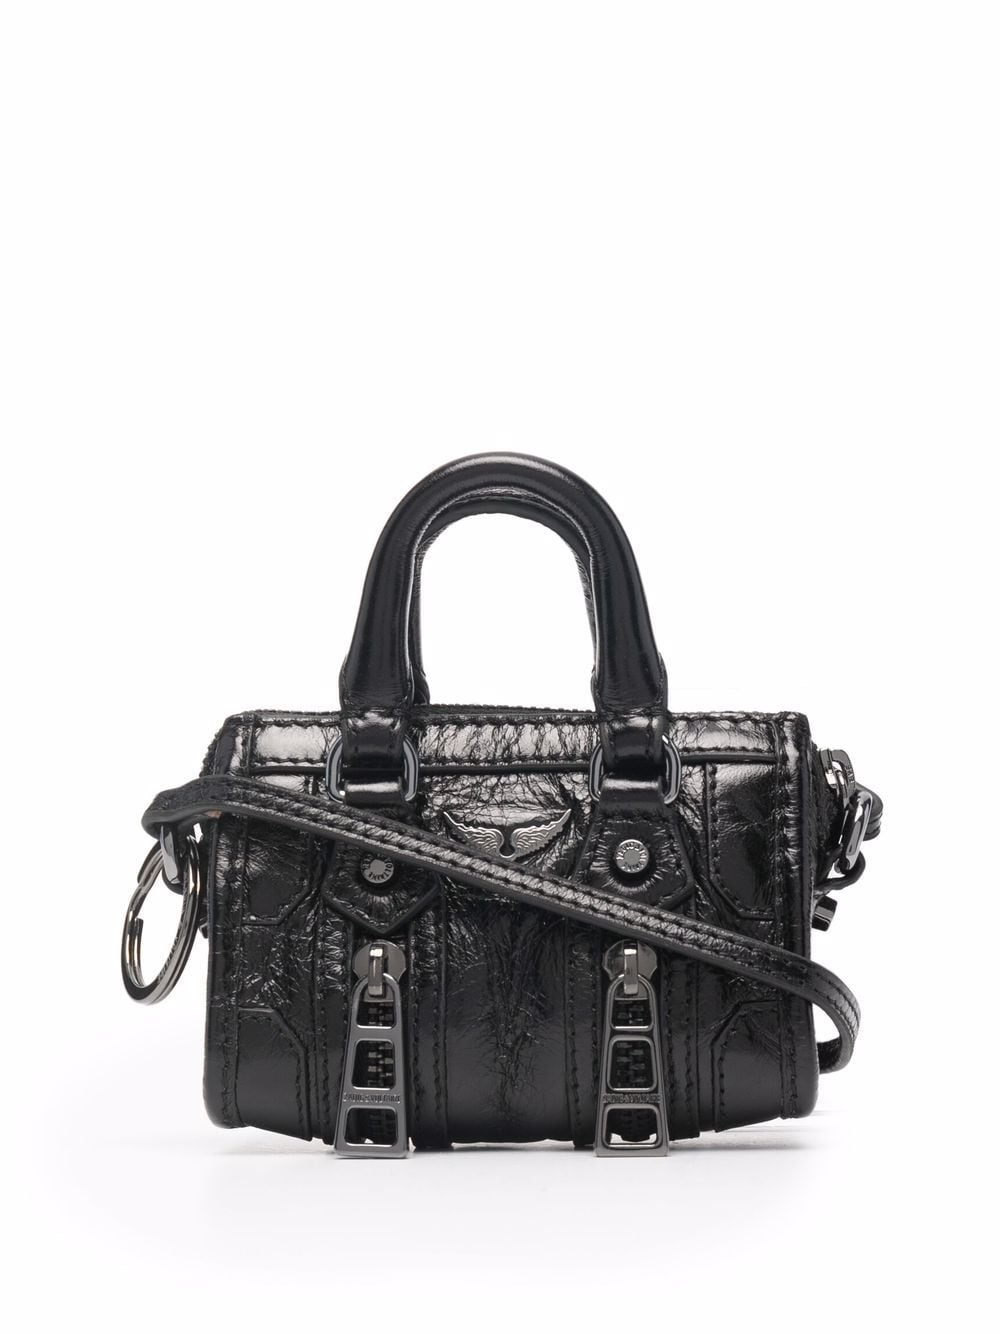 Zadig&Voltaire Sunny mini patent leather tote - Black